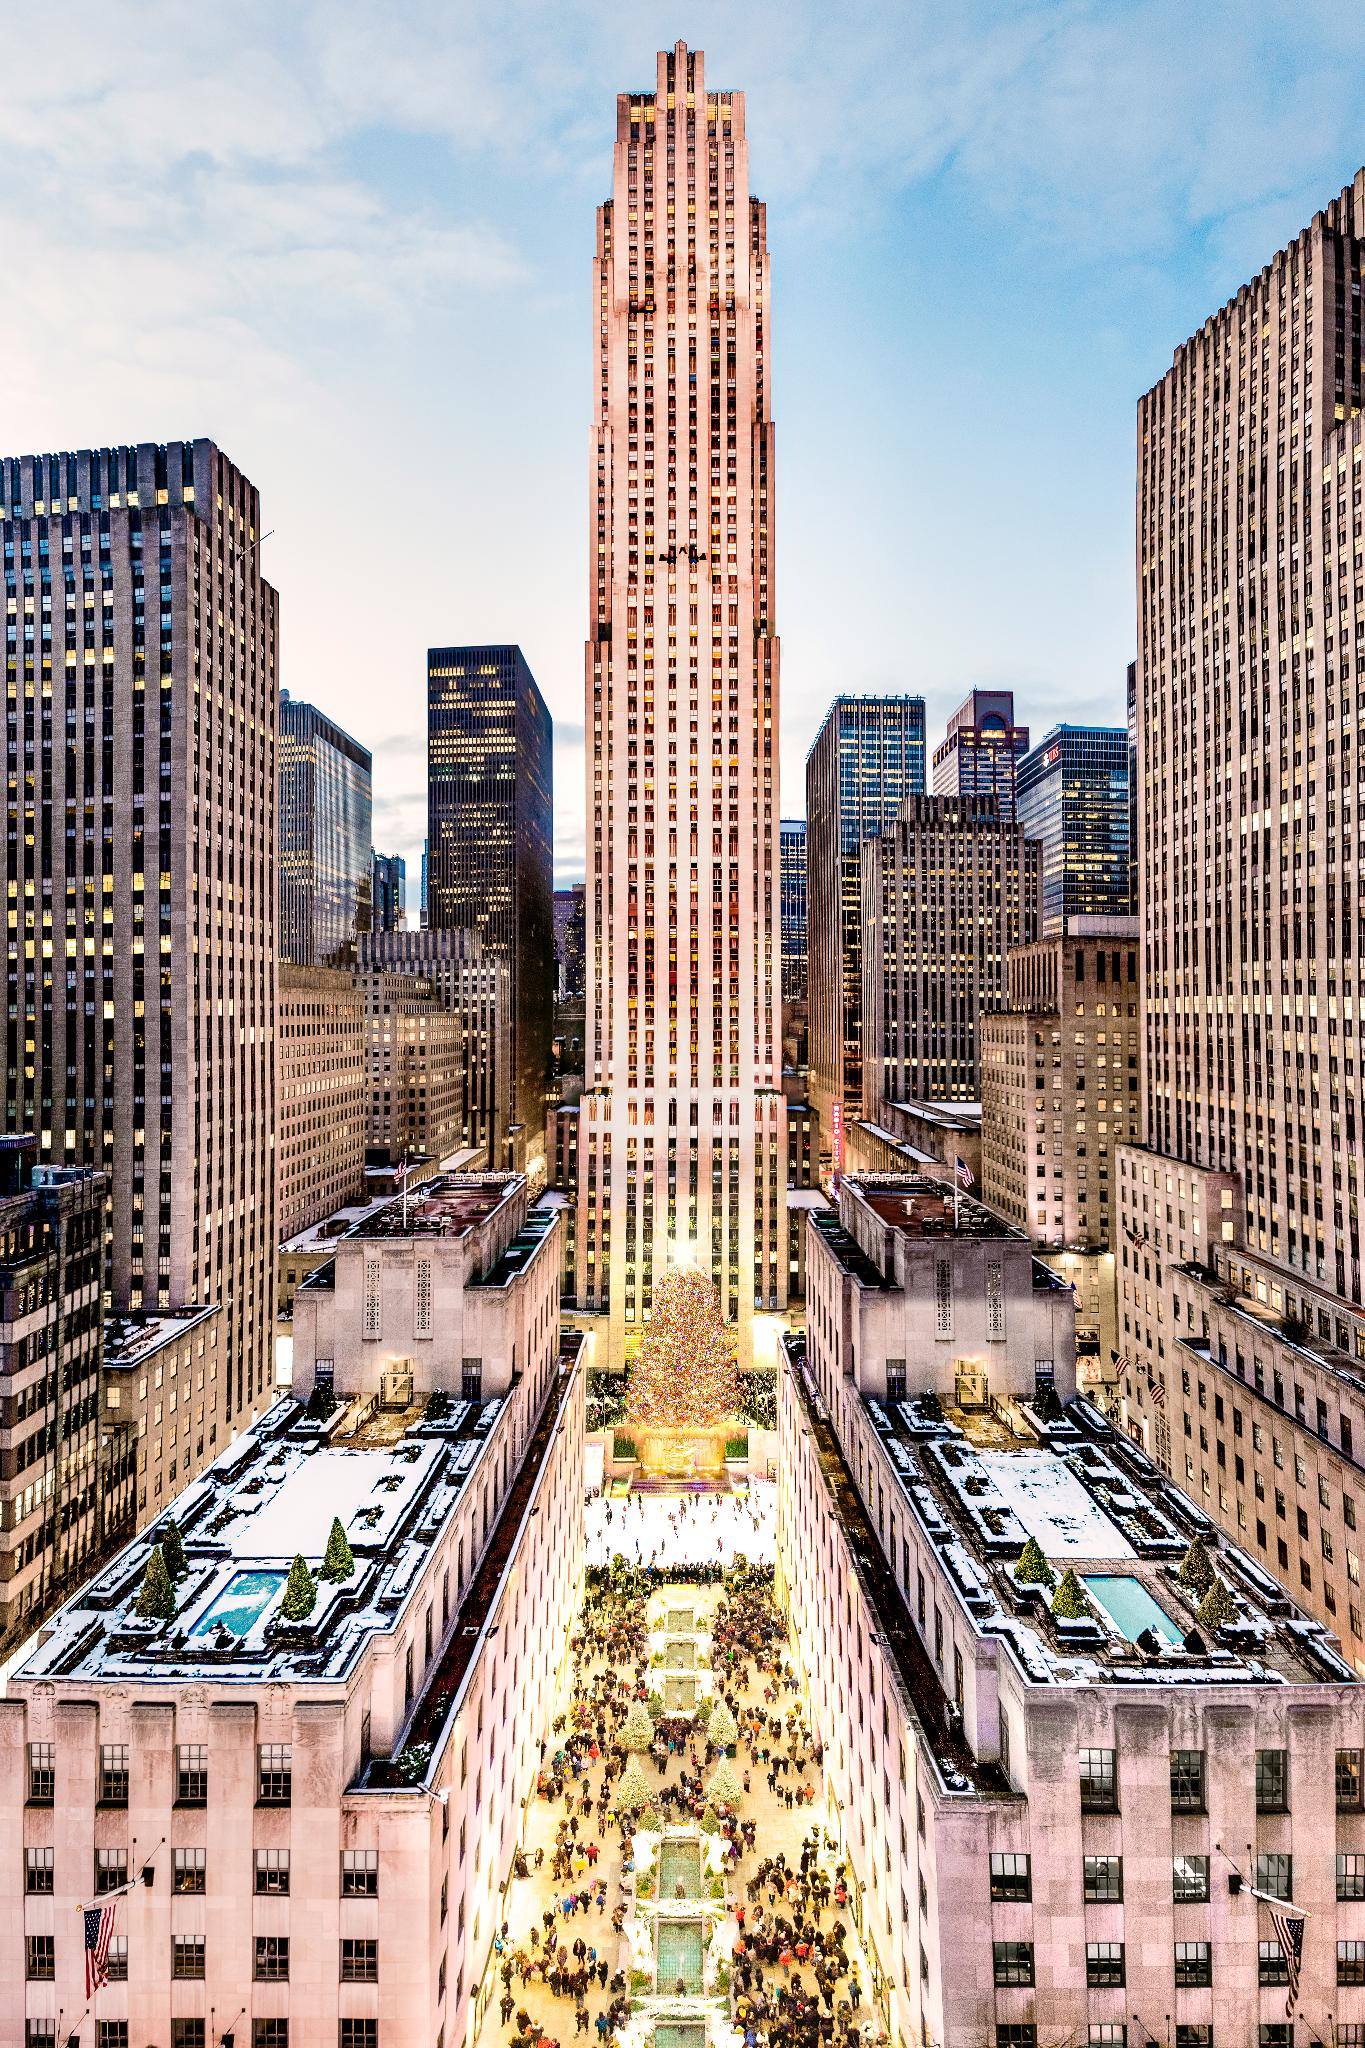 View from the Rockefeller Center, New York - Lesley Anne Derks